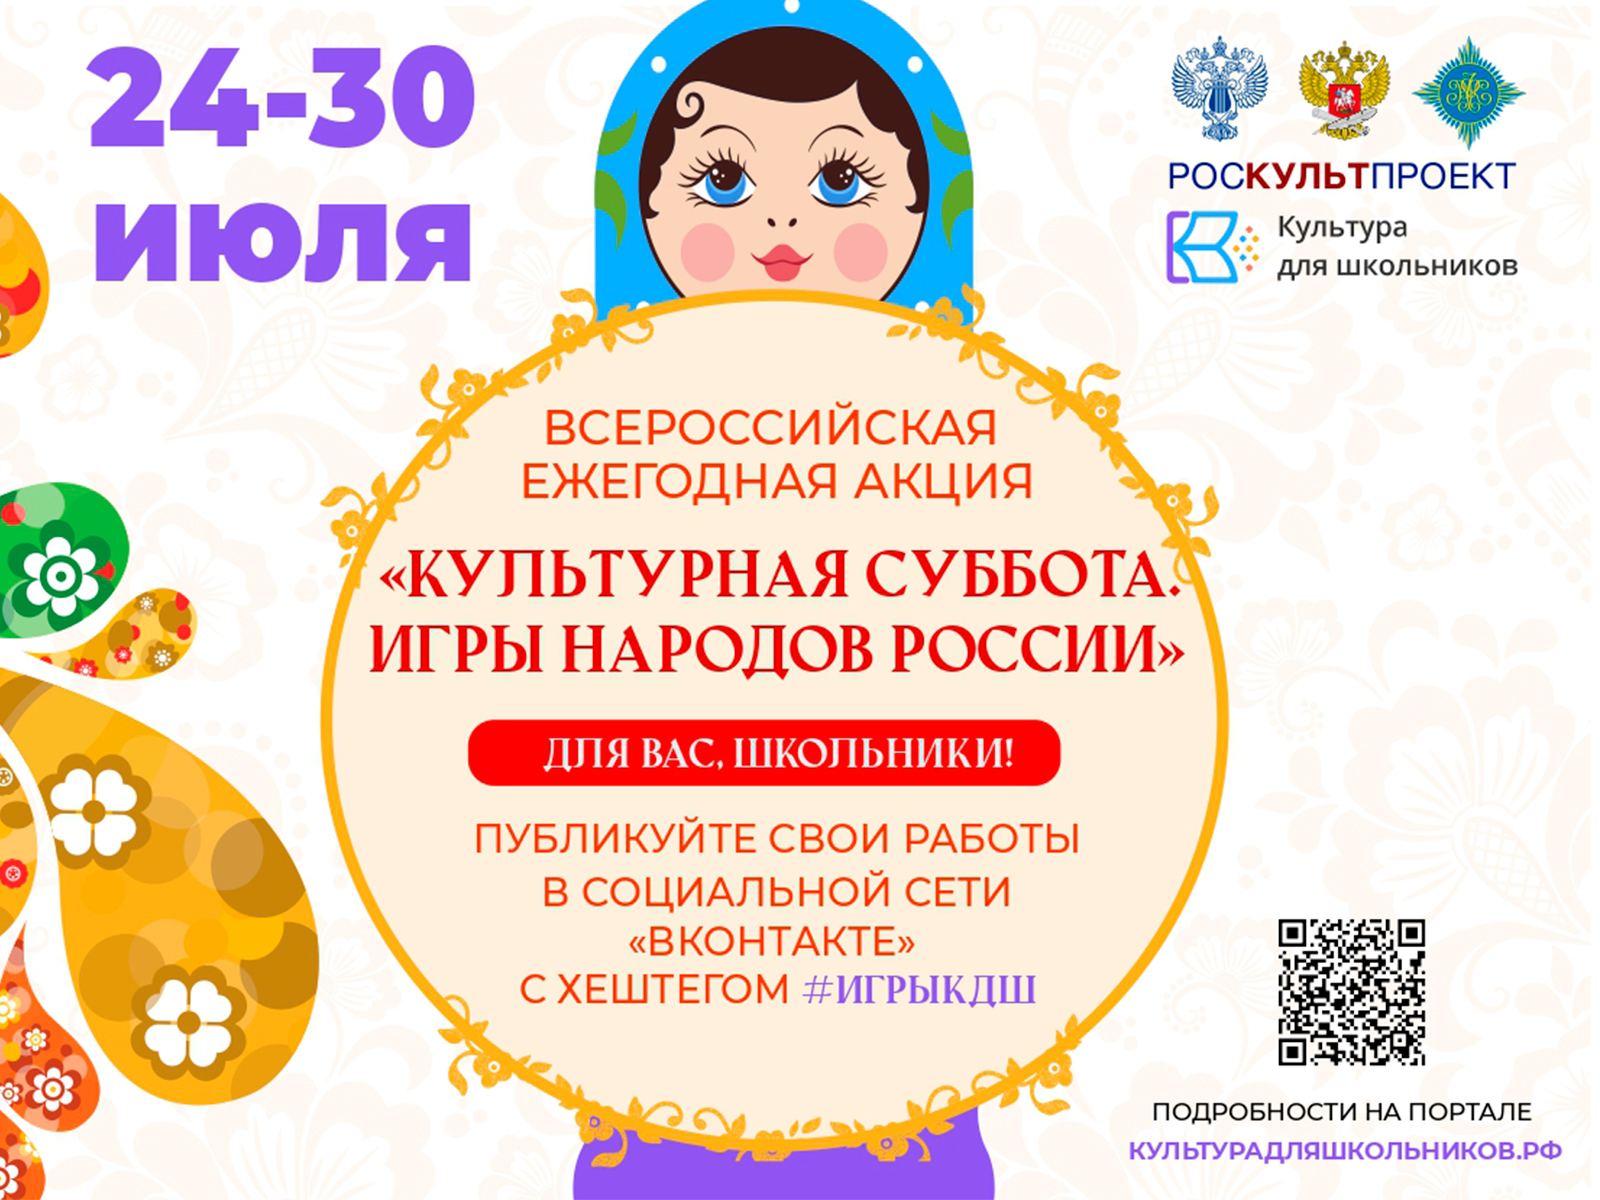 24 июля в рамках проекта «Культура для школьников» стартует ежегодная акция «Культурная суббота. Игры народов России детям».